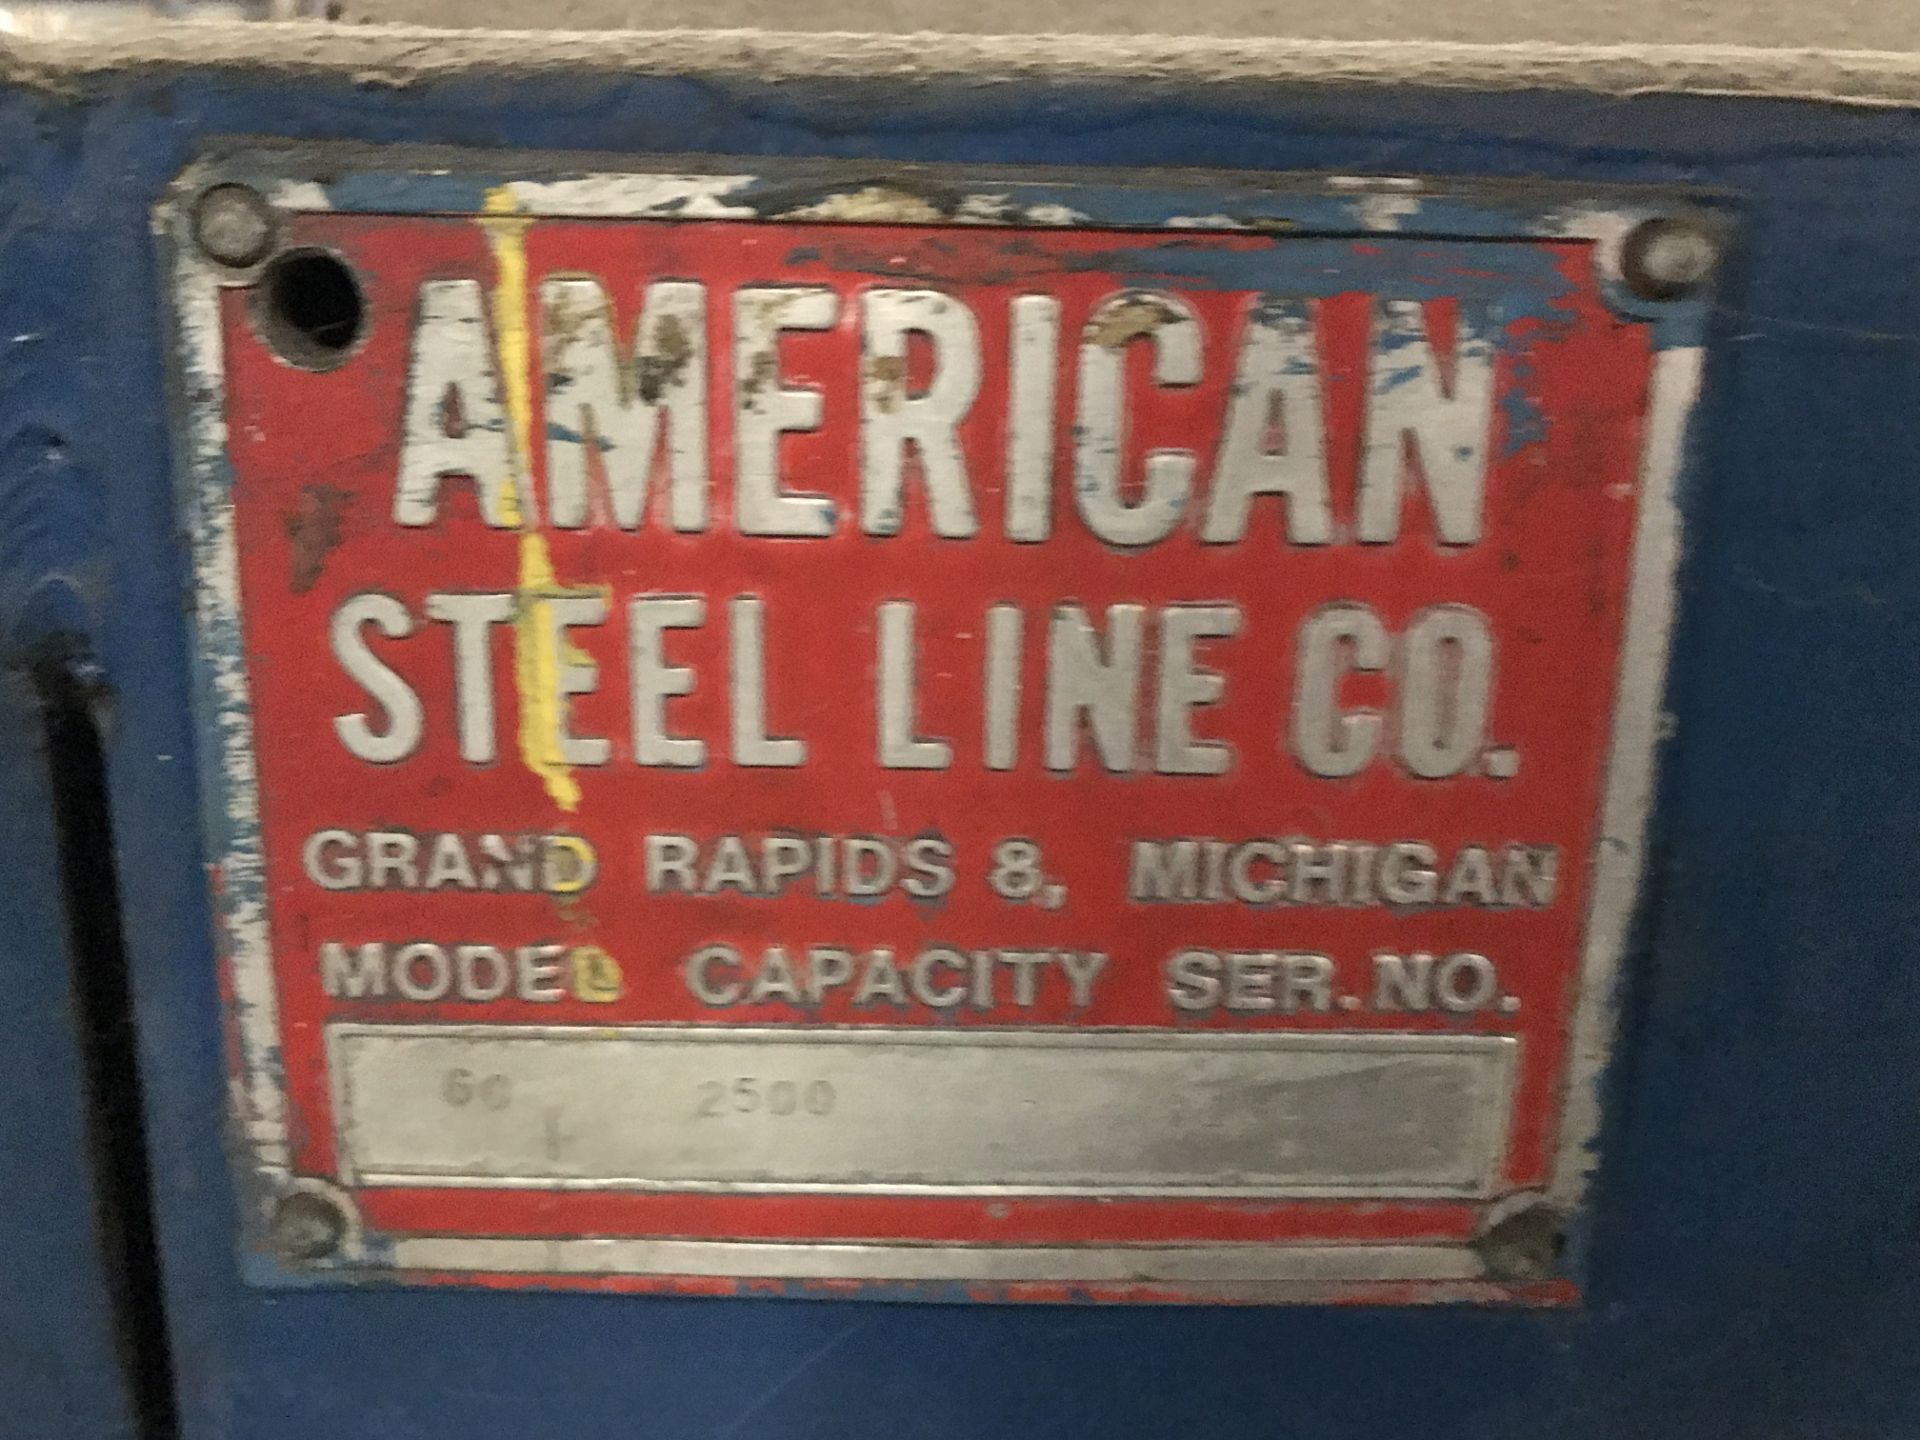 2500 Lbs x 18" Wide American Steel Line Reel - Image 2 of 3